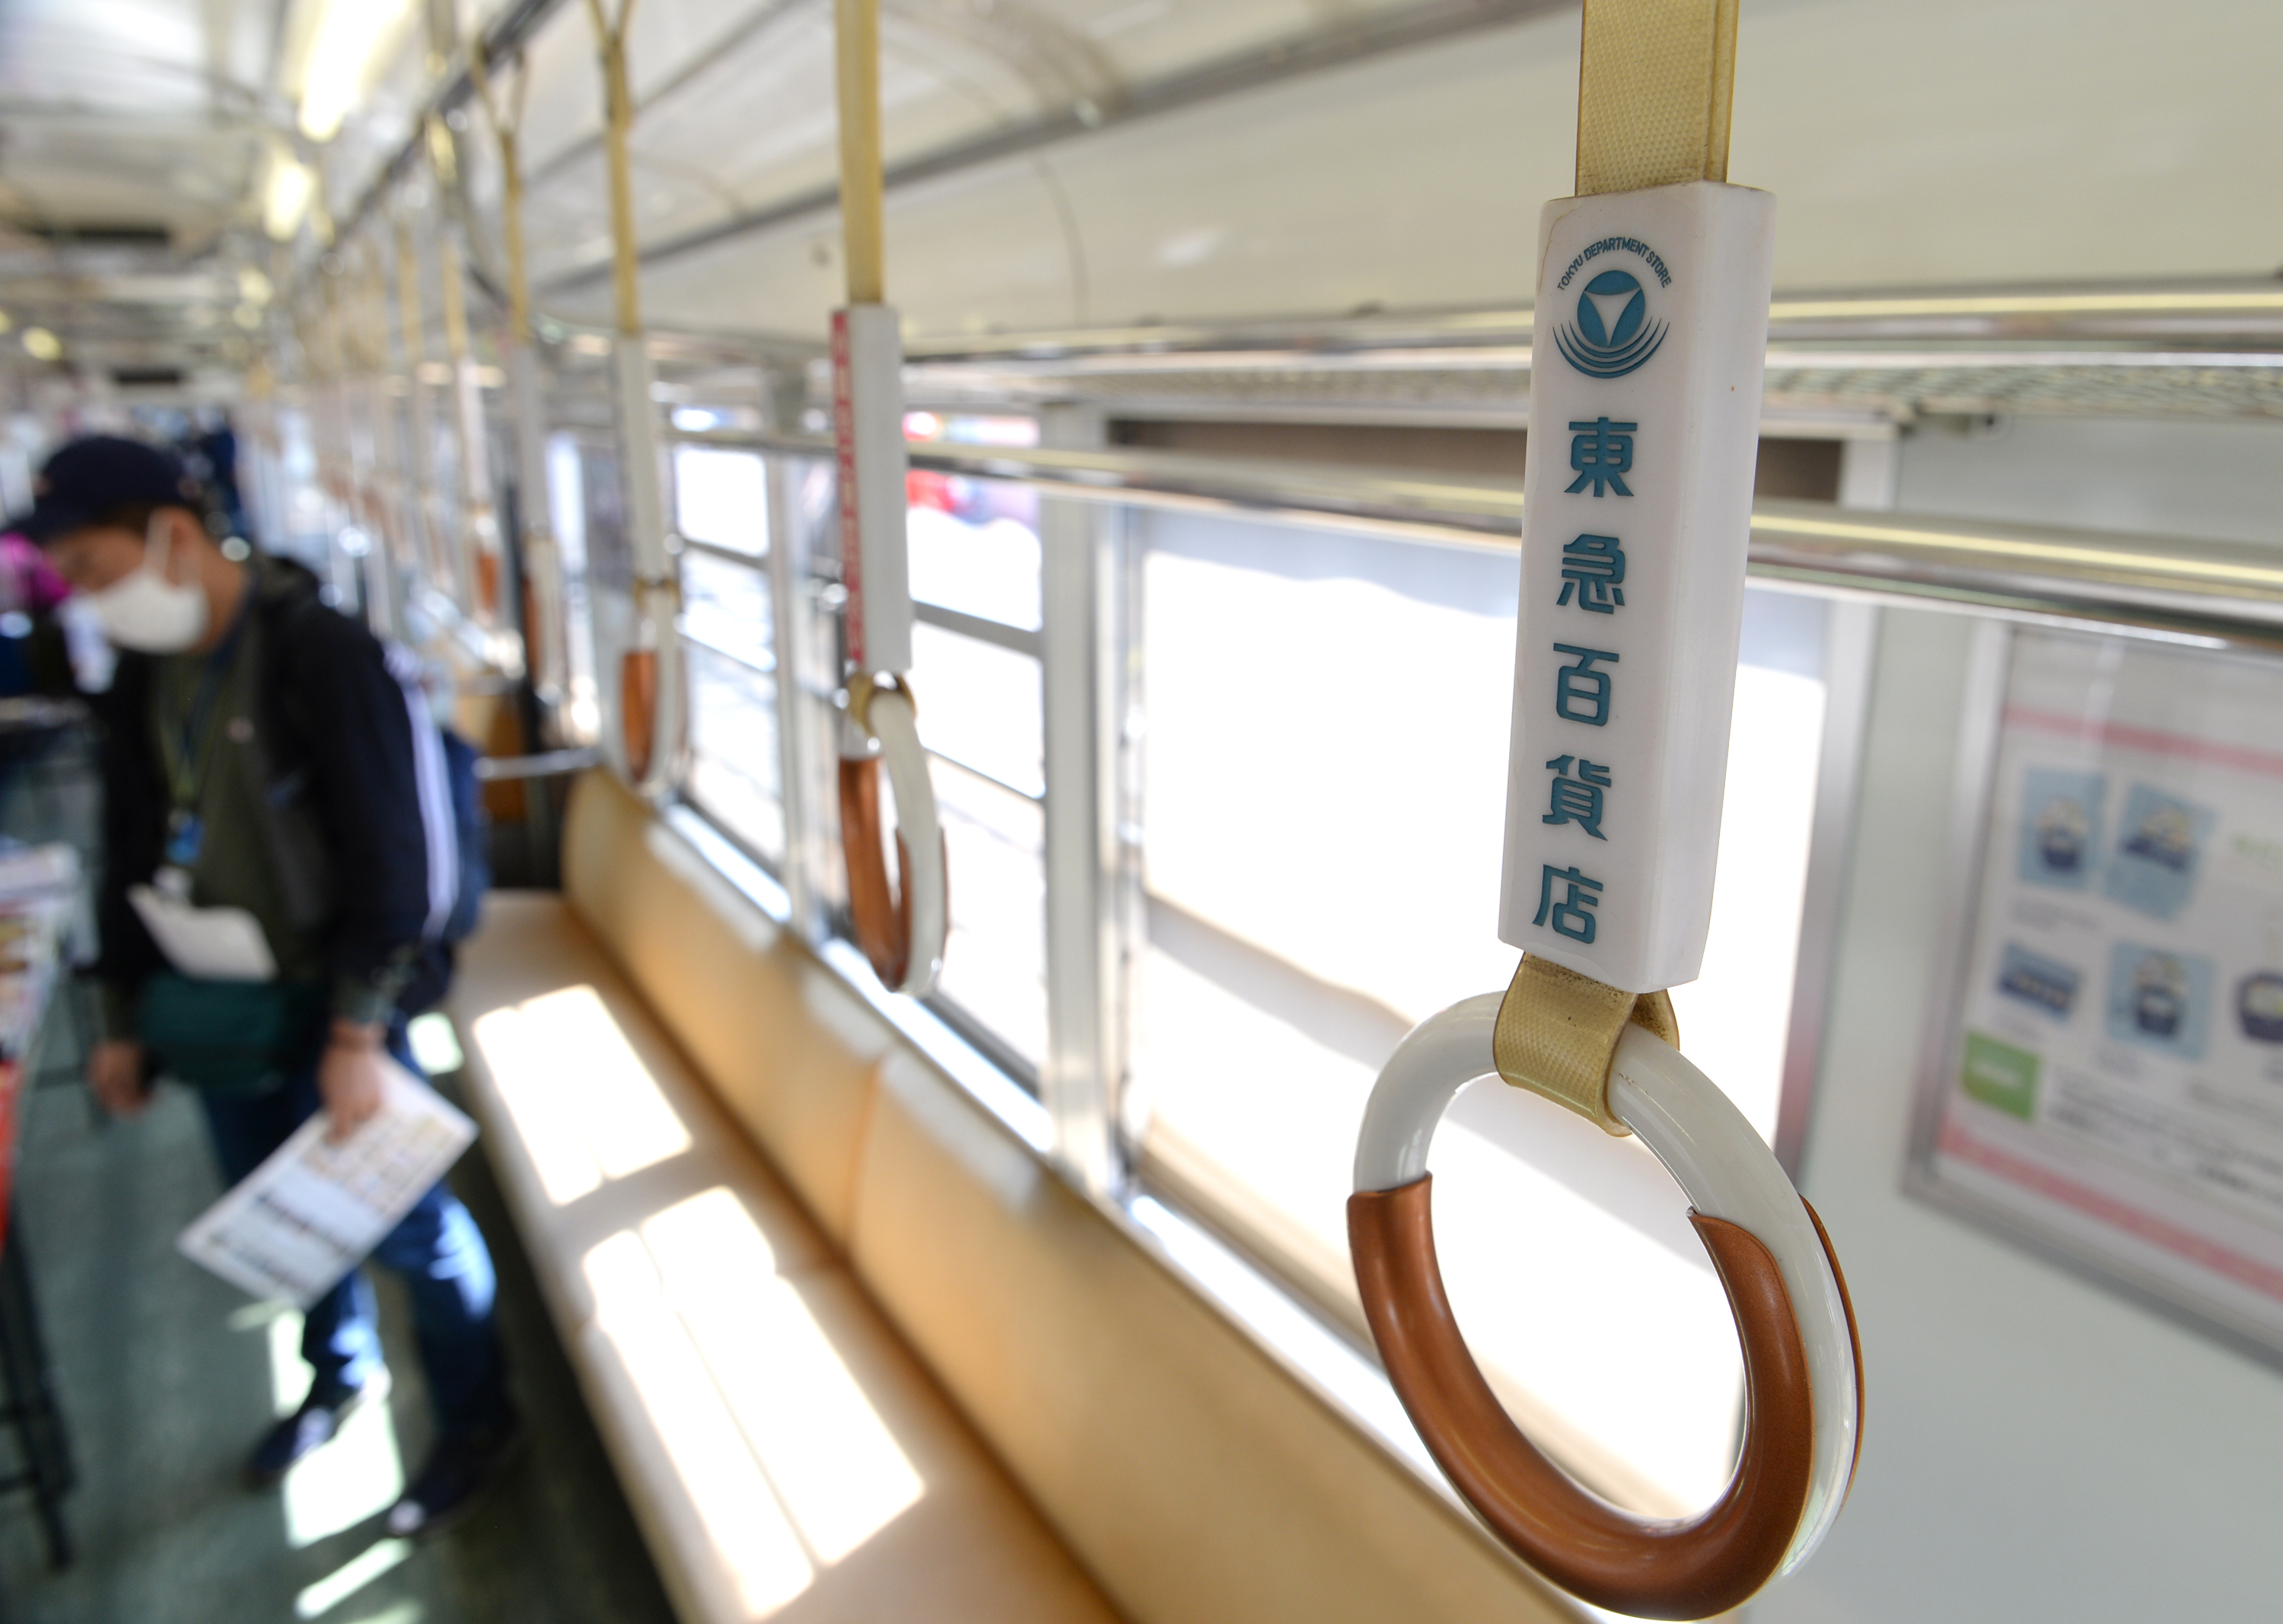 関西の鉄道】大阪・貝塚を走る「渋谷」の車両 東急 水間鉄道につないだ